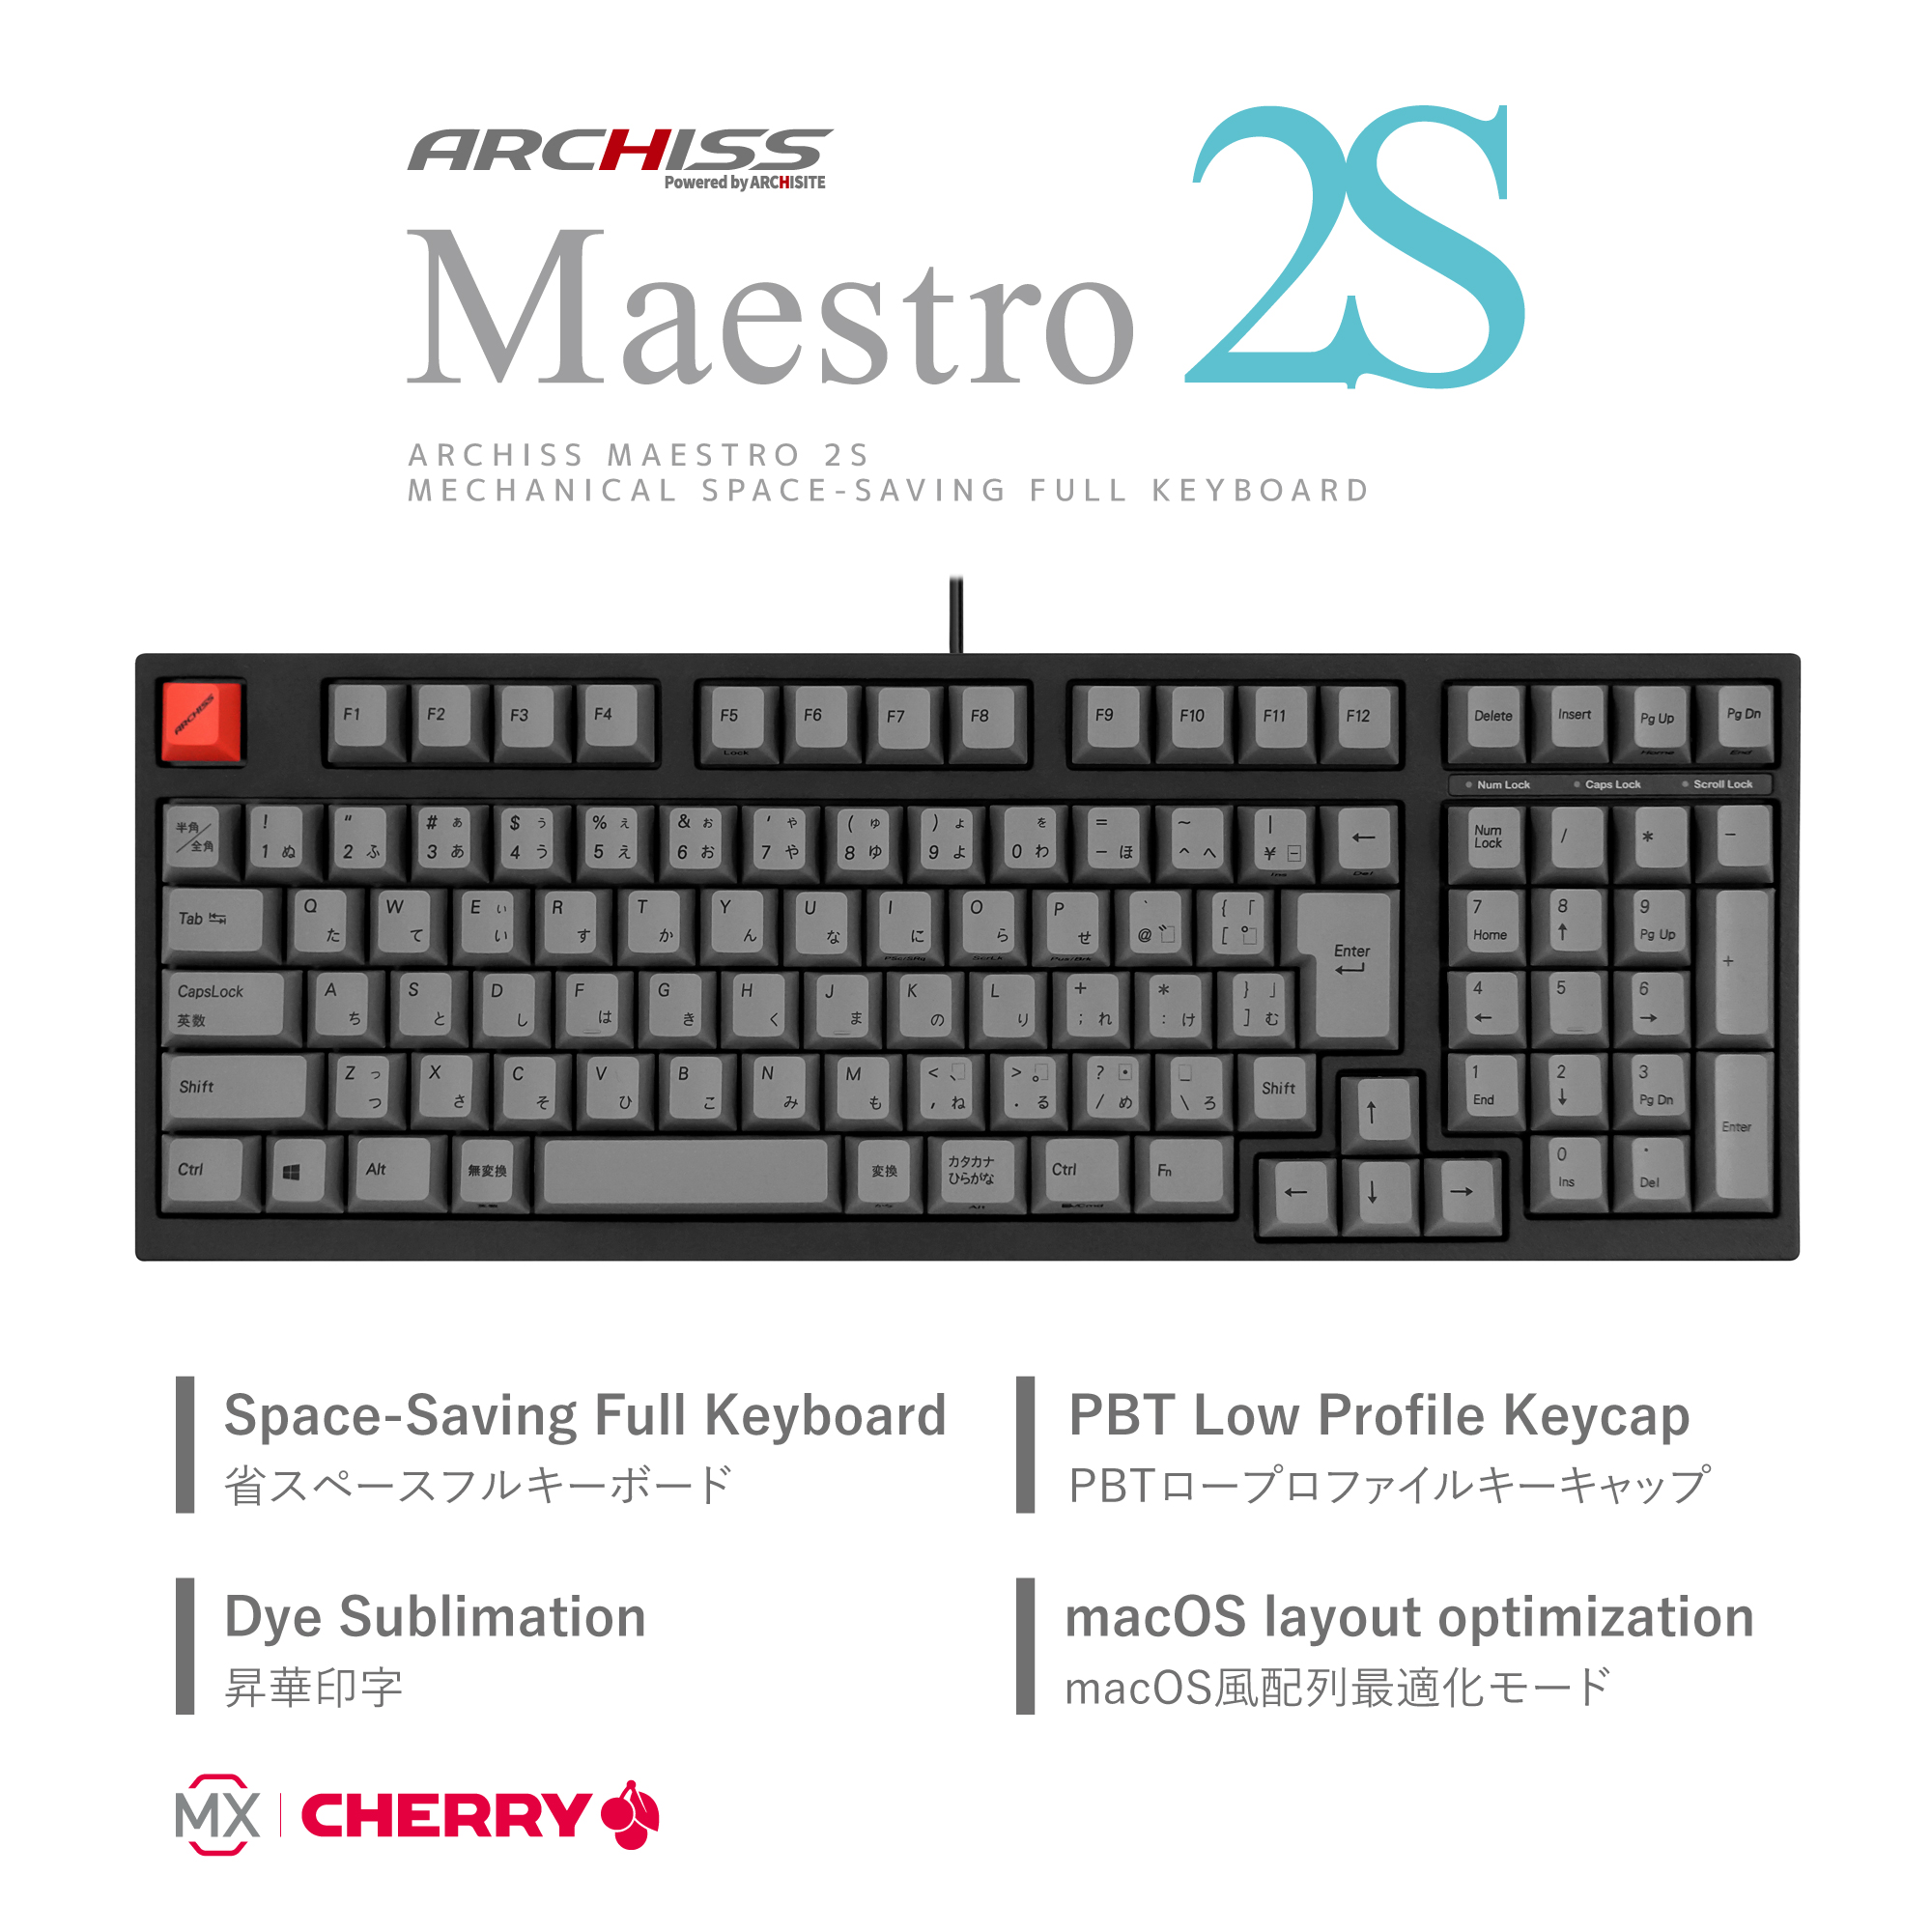 Maestro 2S（日本語配列）- メカニカルキーボード - ARCHISS - 株式 